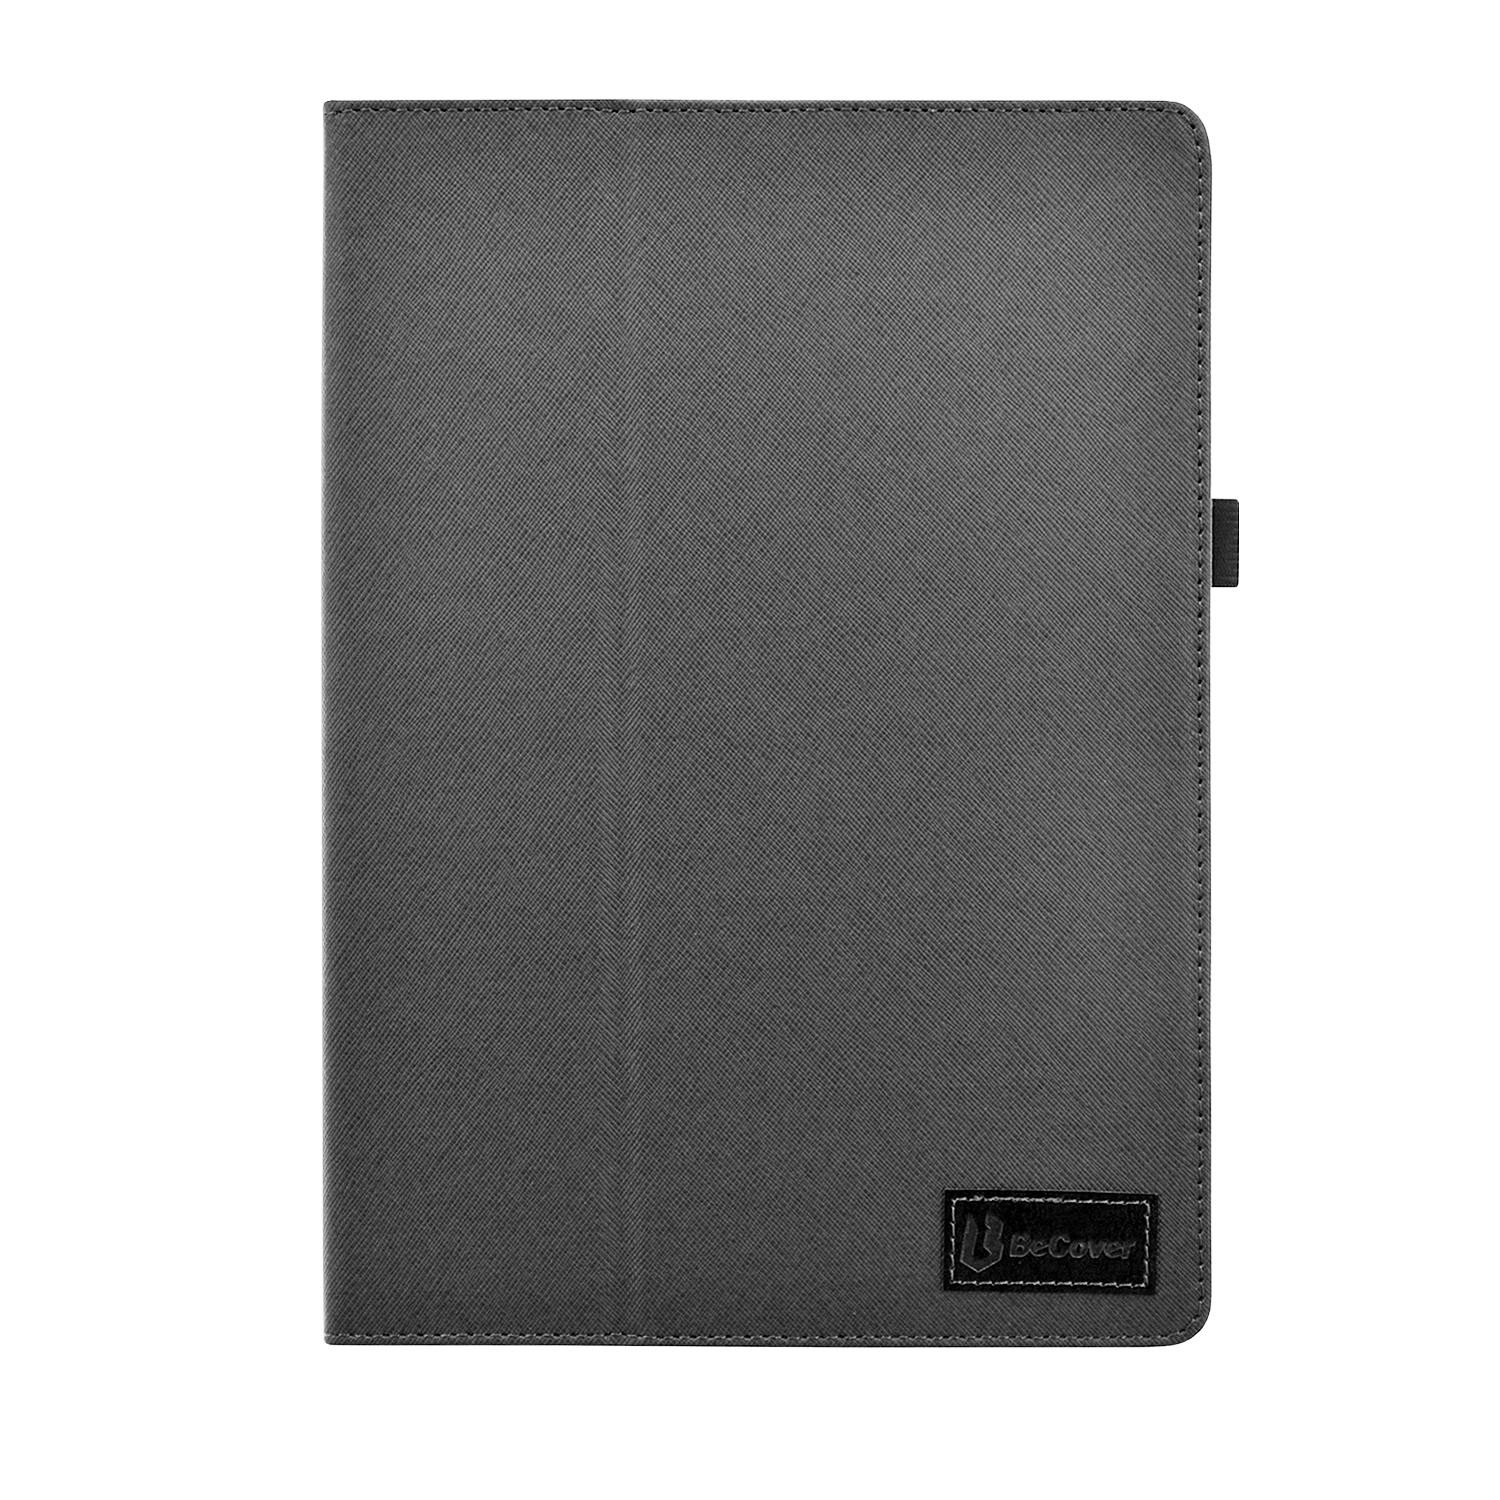 BeCover Slimbook для Samsung Galaxy Tab A 10.1 2019 T510/T515 Black (703733) - зображення 1